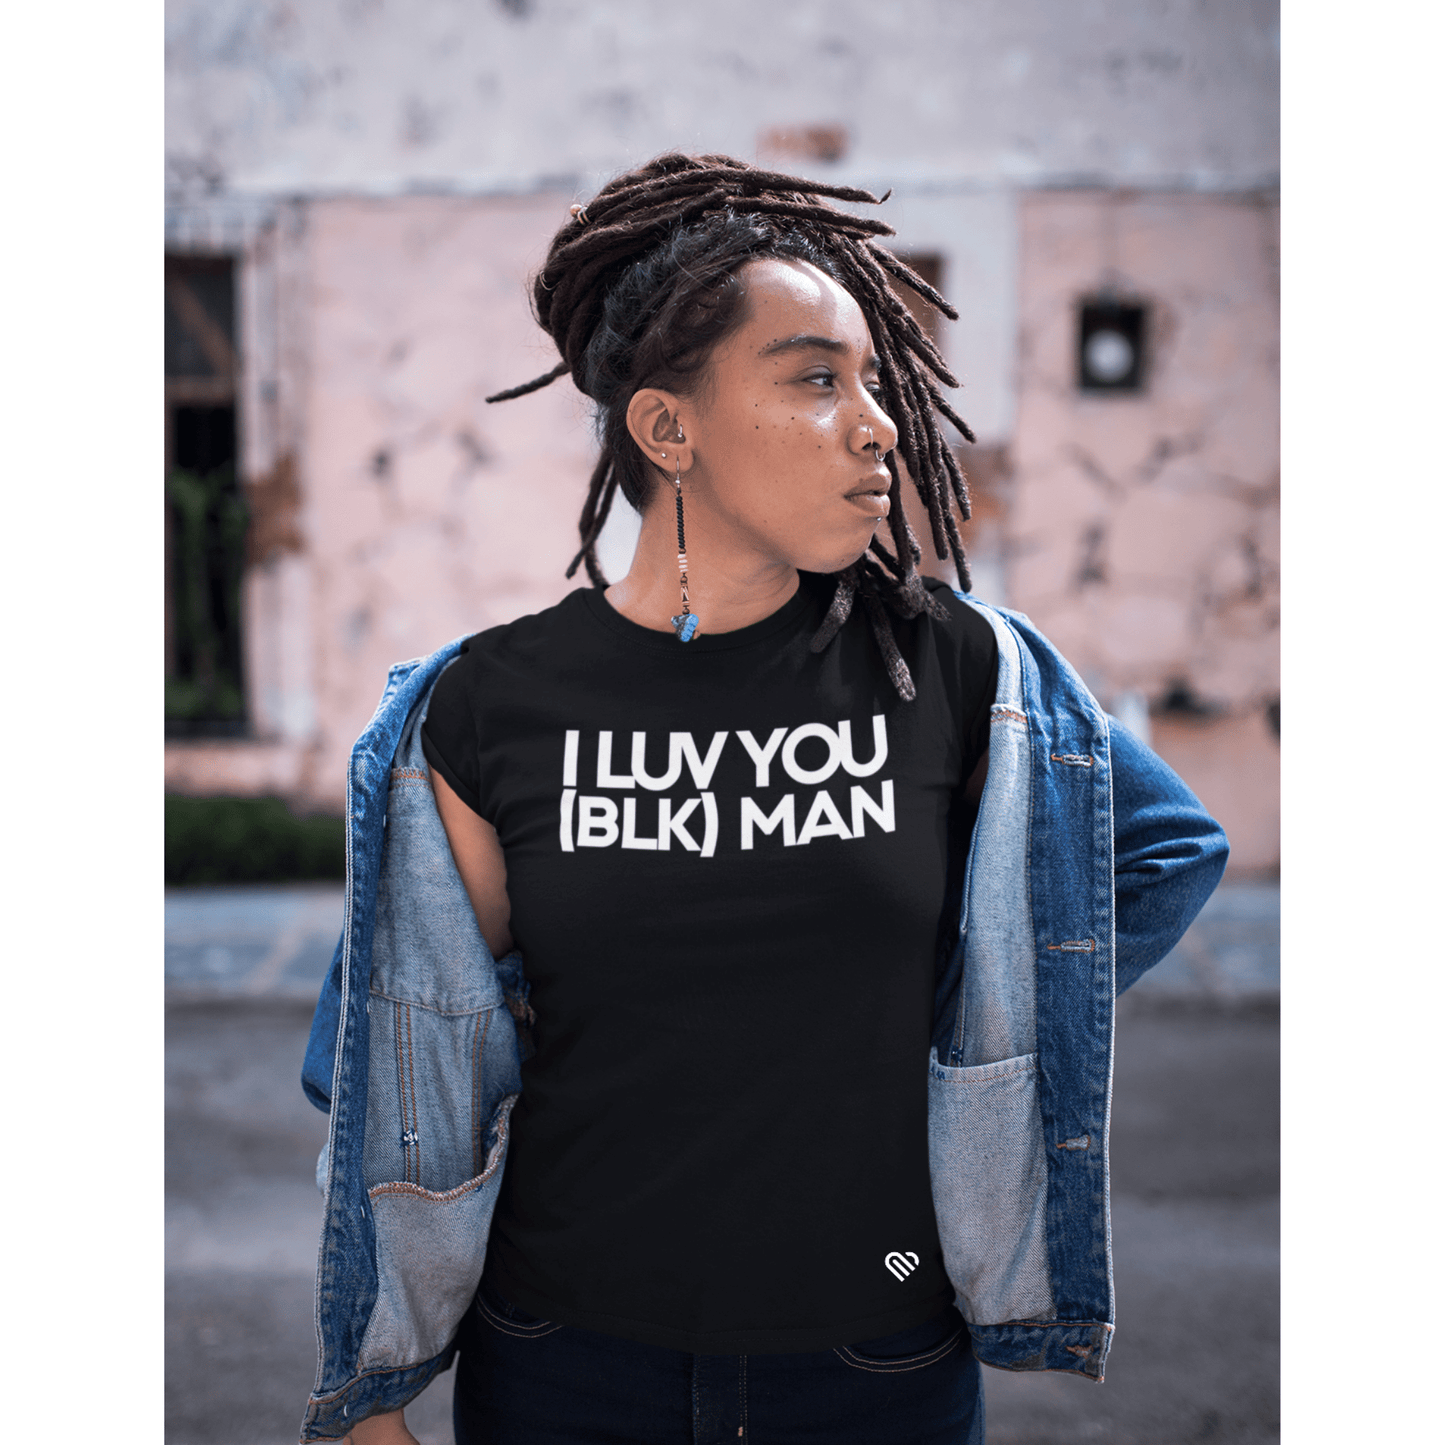 I LUV YOU (BLK) MAN T-Shirt